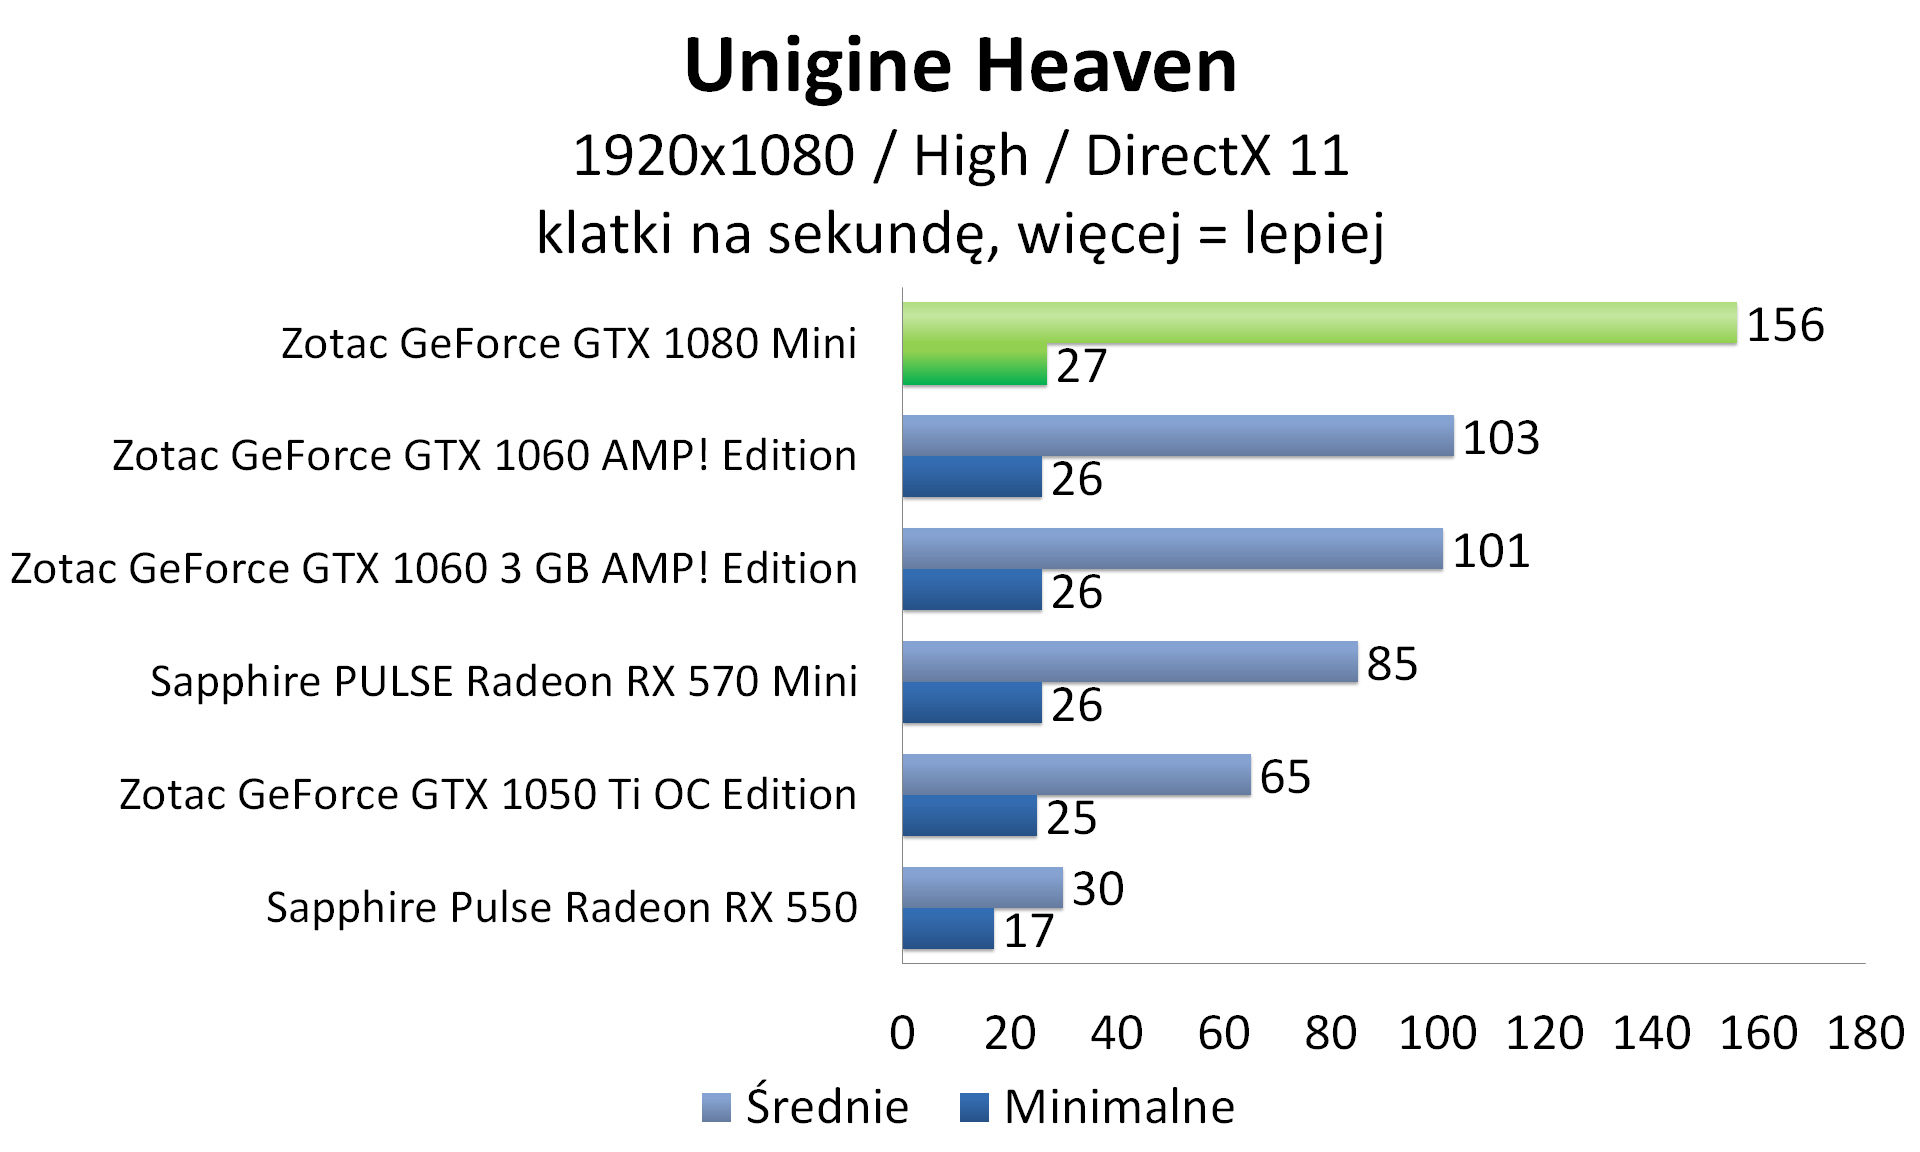 Zotac GeForce GTX 1080 Mini - Unigine Heaven